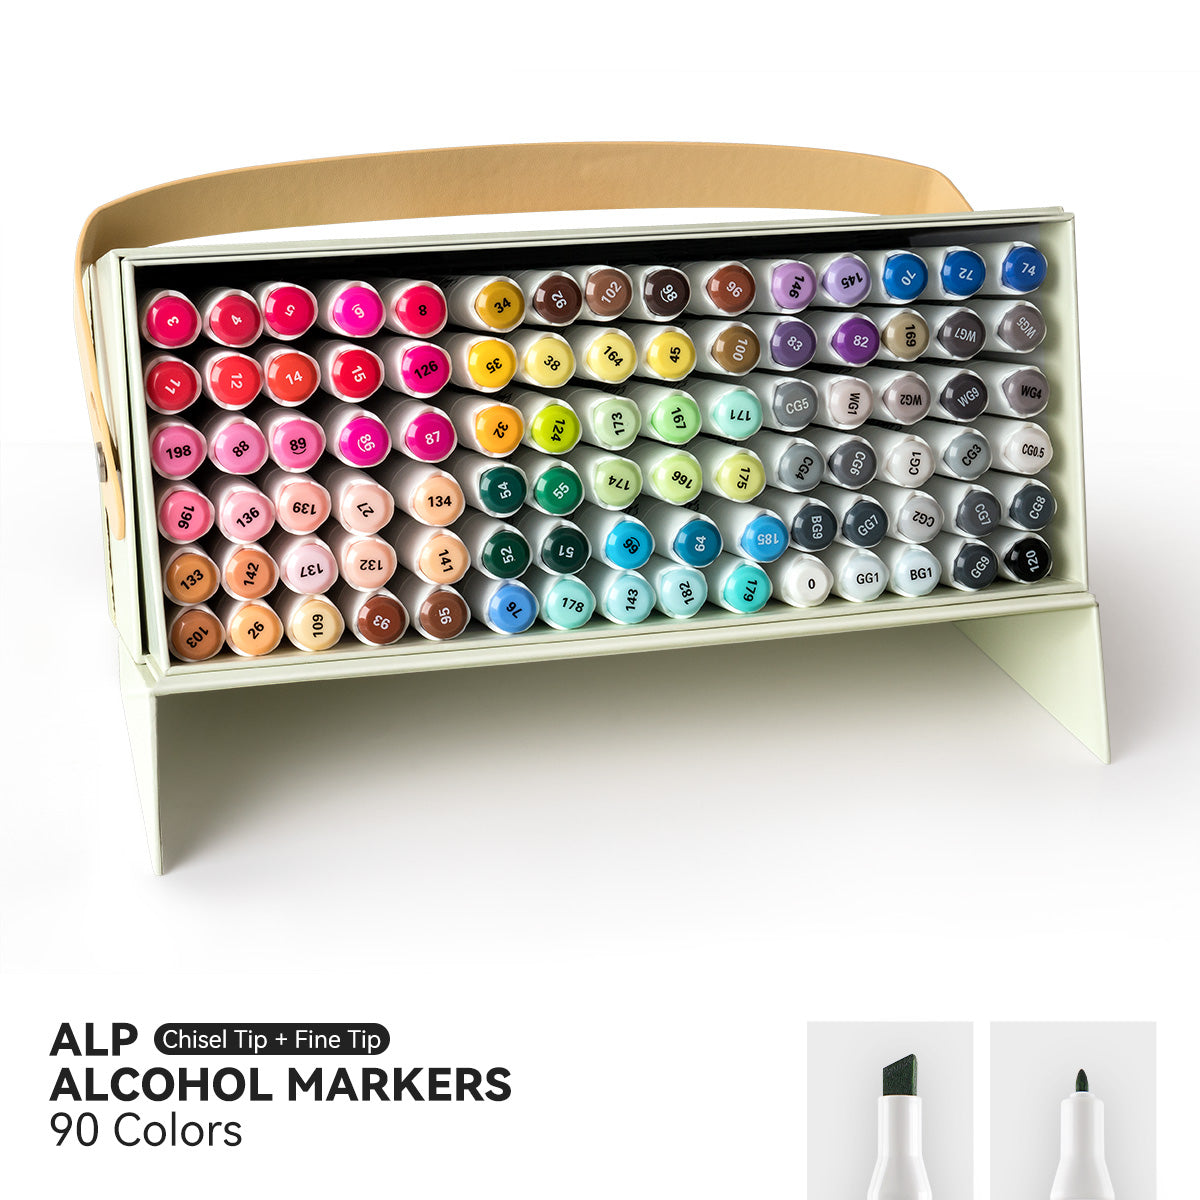 Arrtx ALP 90 couleurs marqueurs à l'alcool ensemble de stylos à peinture